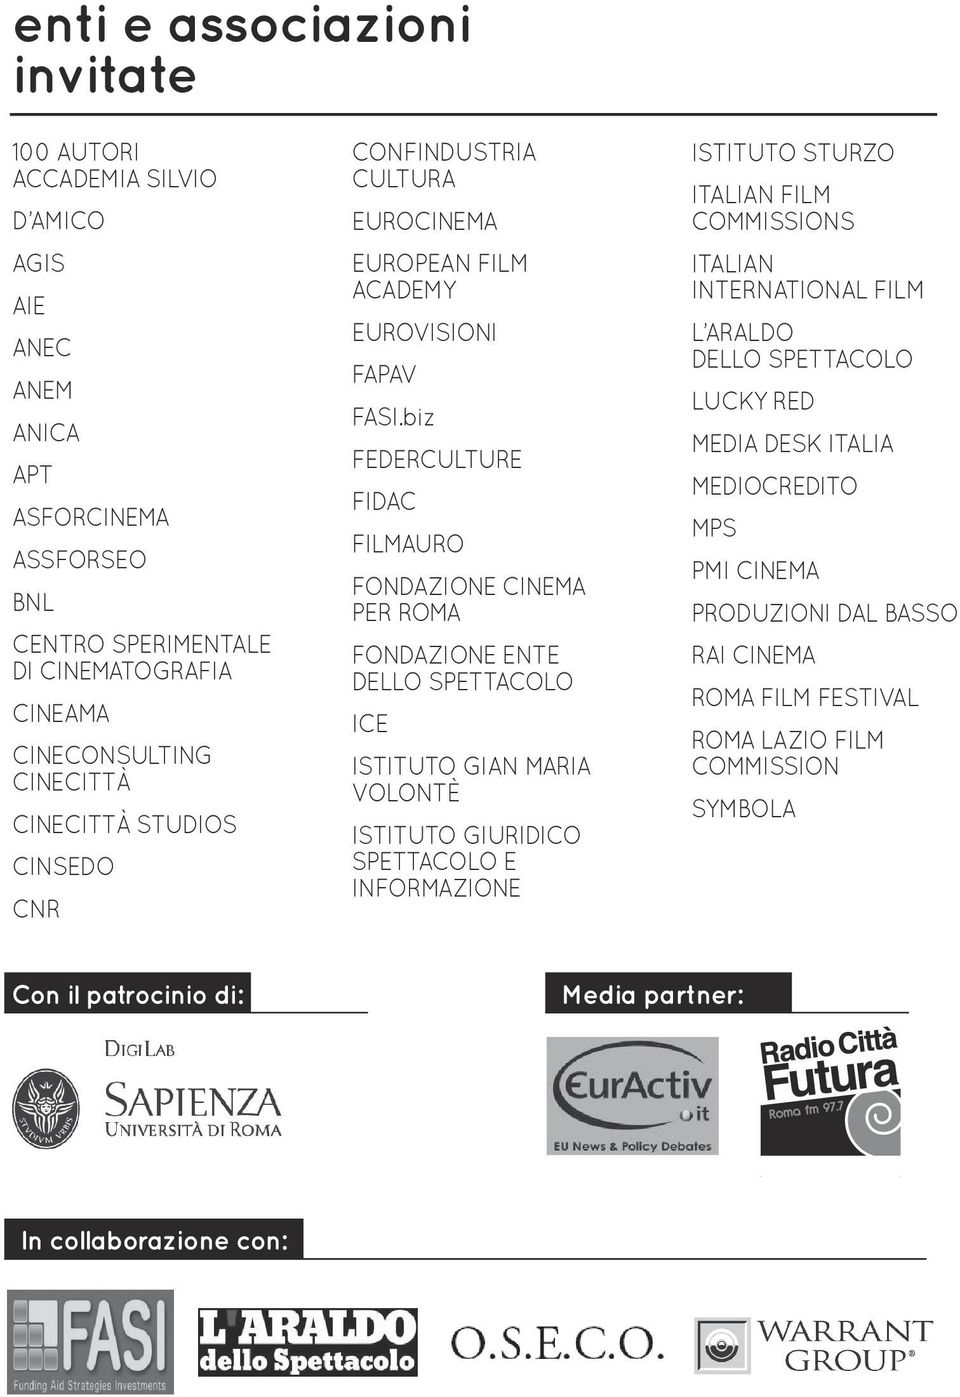 biz MEDIA DESK ITALIA FEDERCULTURE MEDIOCREDITO FIDAC MPS FILMAURO BNL FONDAZIONE CINEMA PER ROMA CENTRO SPERIMENTALE DI CINEMATOGRAFIA FONDAZIONE ENTE DELLO SPETTACOLO CINEAMA ICE